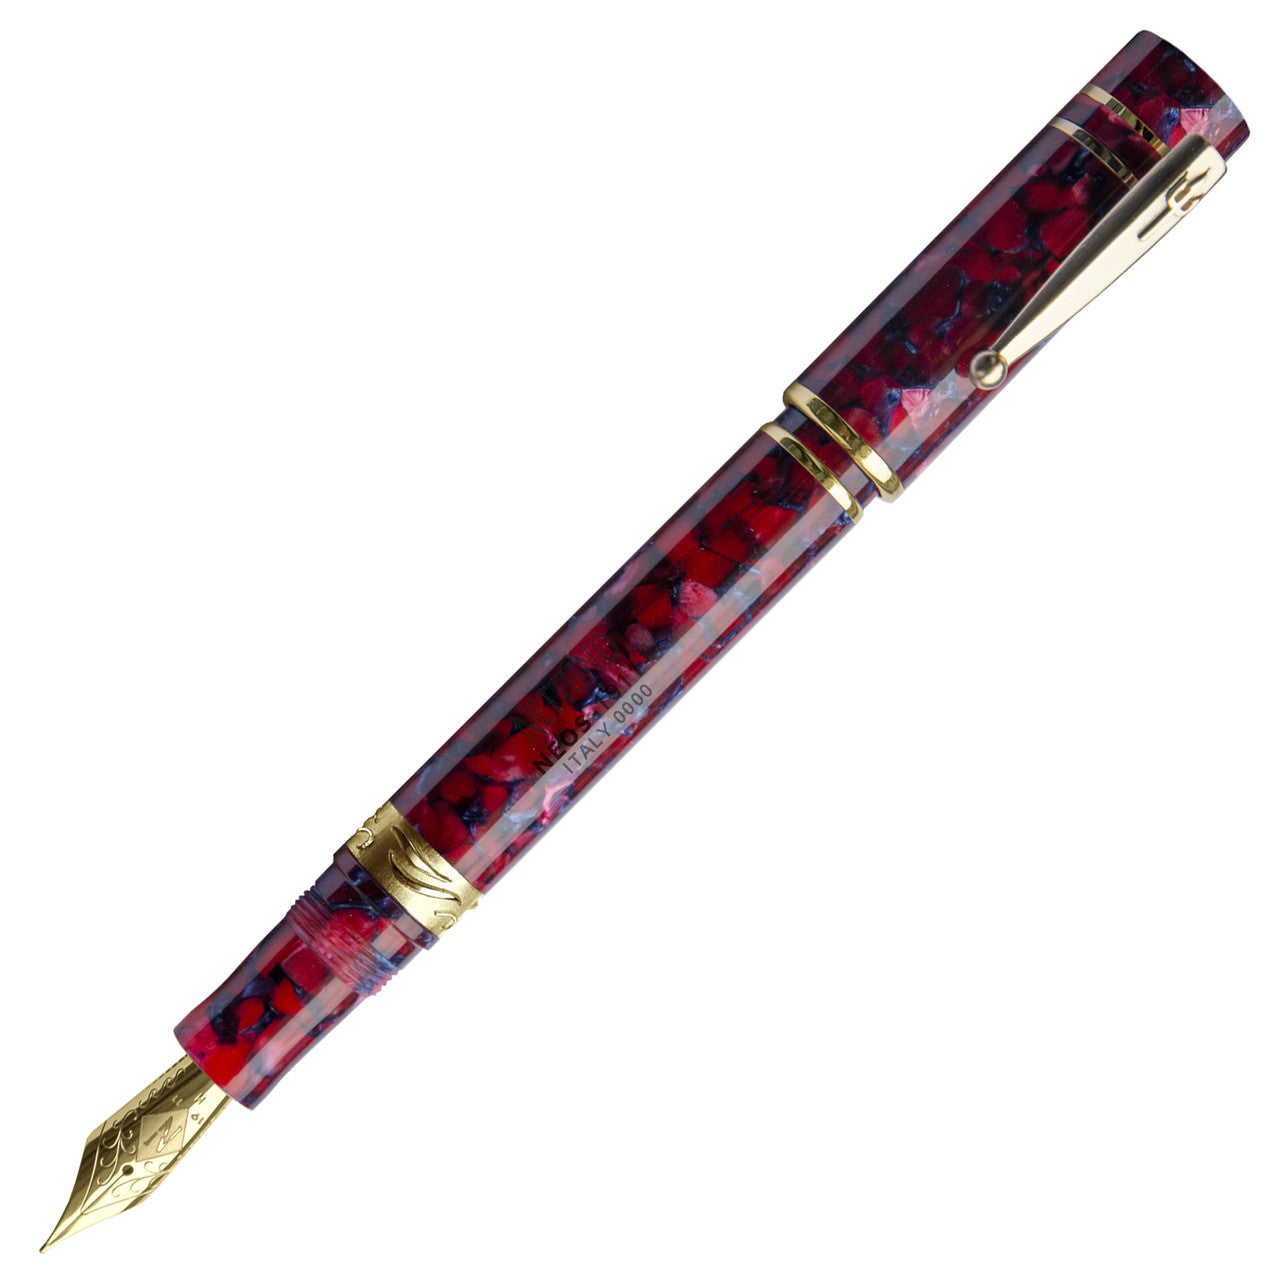 NETTUNO 1911 Neos Prometeo (red-blue / gold plated) fountain pen